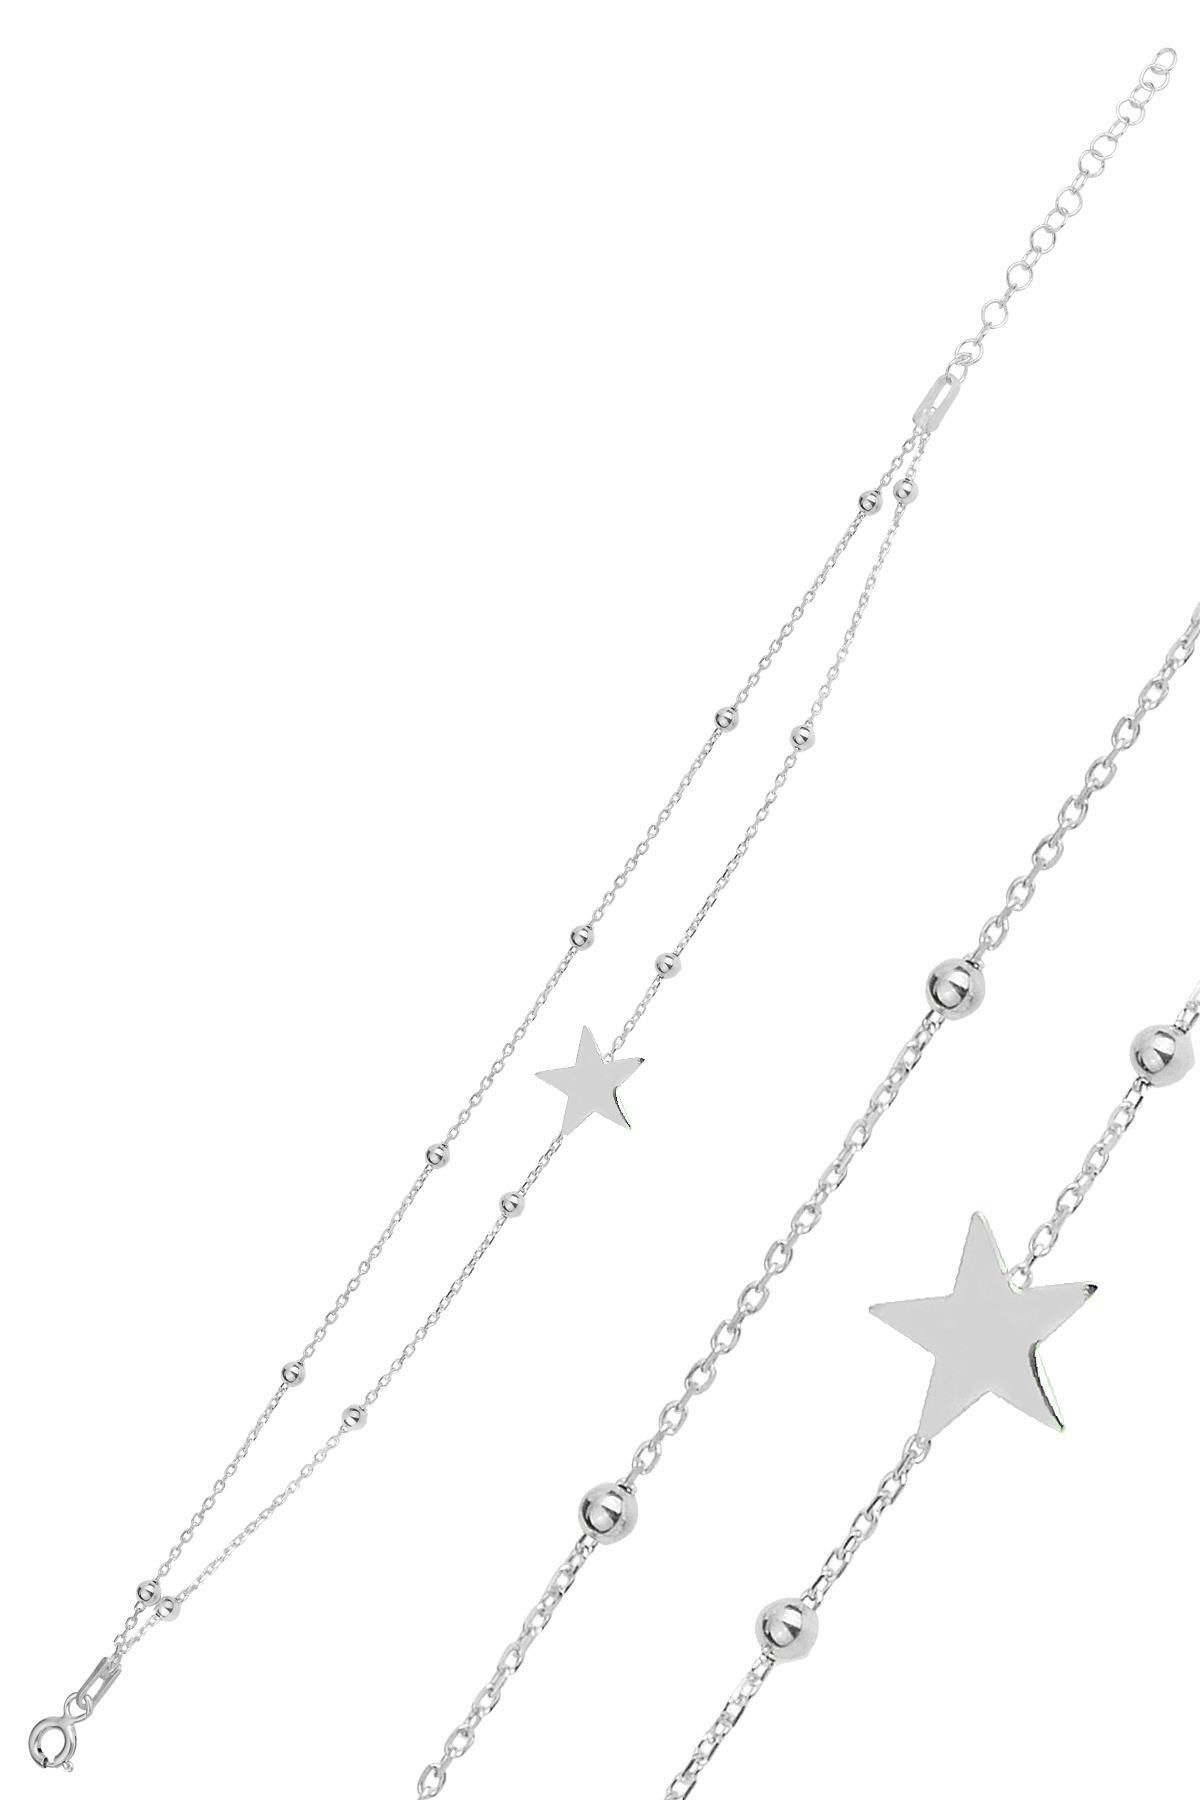 Söğütlü Silver Gümüş rodaj top top çift zincirli yıldız bileklik SGTL12277RODAJ